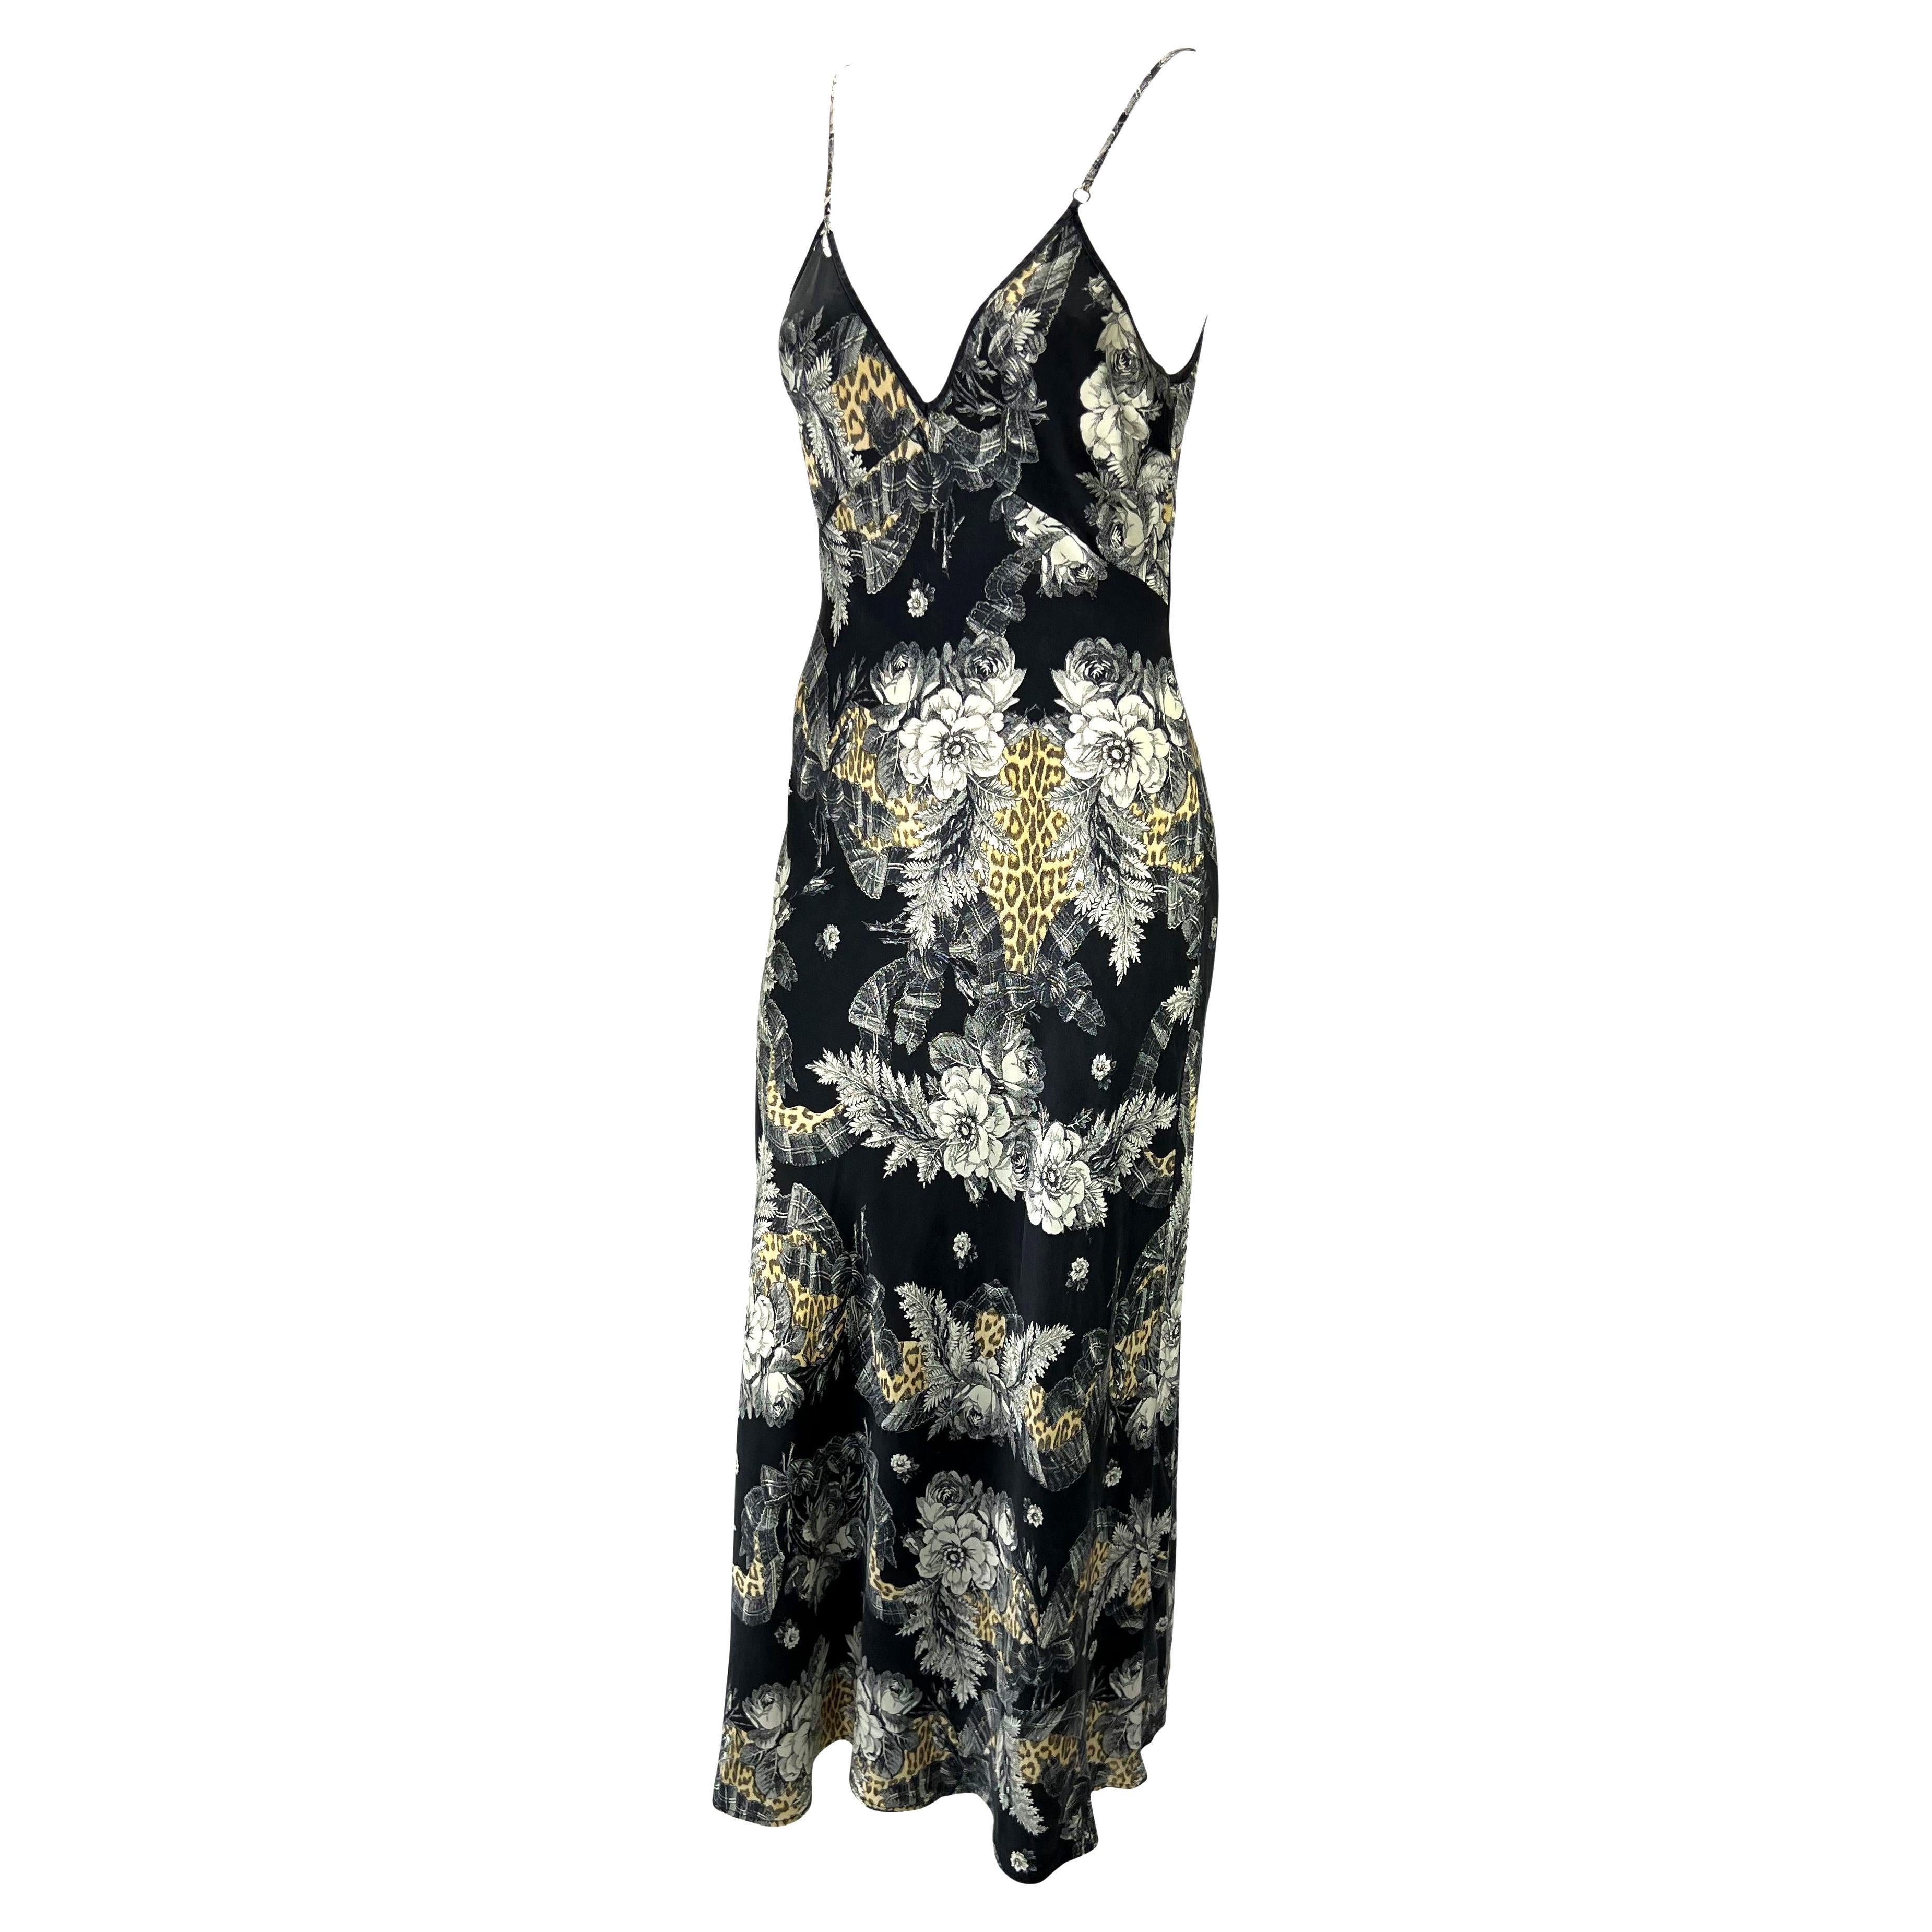 Présentation d'une robe moulante en soie imprimée conçue par Roberto Cavalli pour sa collection de vêtements intimes au début des années 2000. Le satin de soie délavé est orné d'un imprimé guépard et de motifs floraux sur toute sa surface. Cette